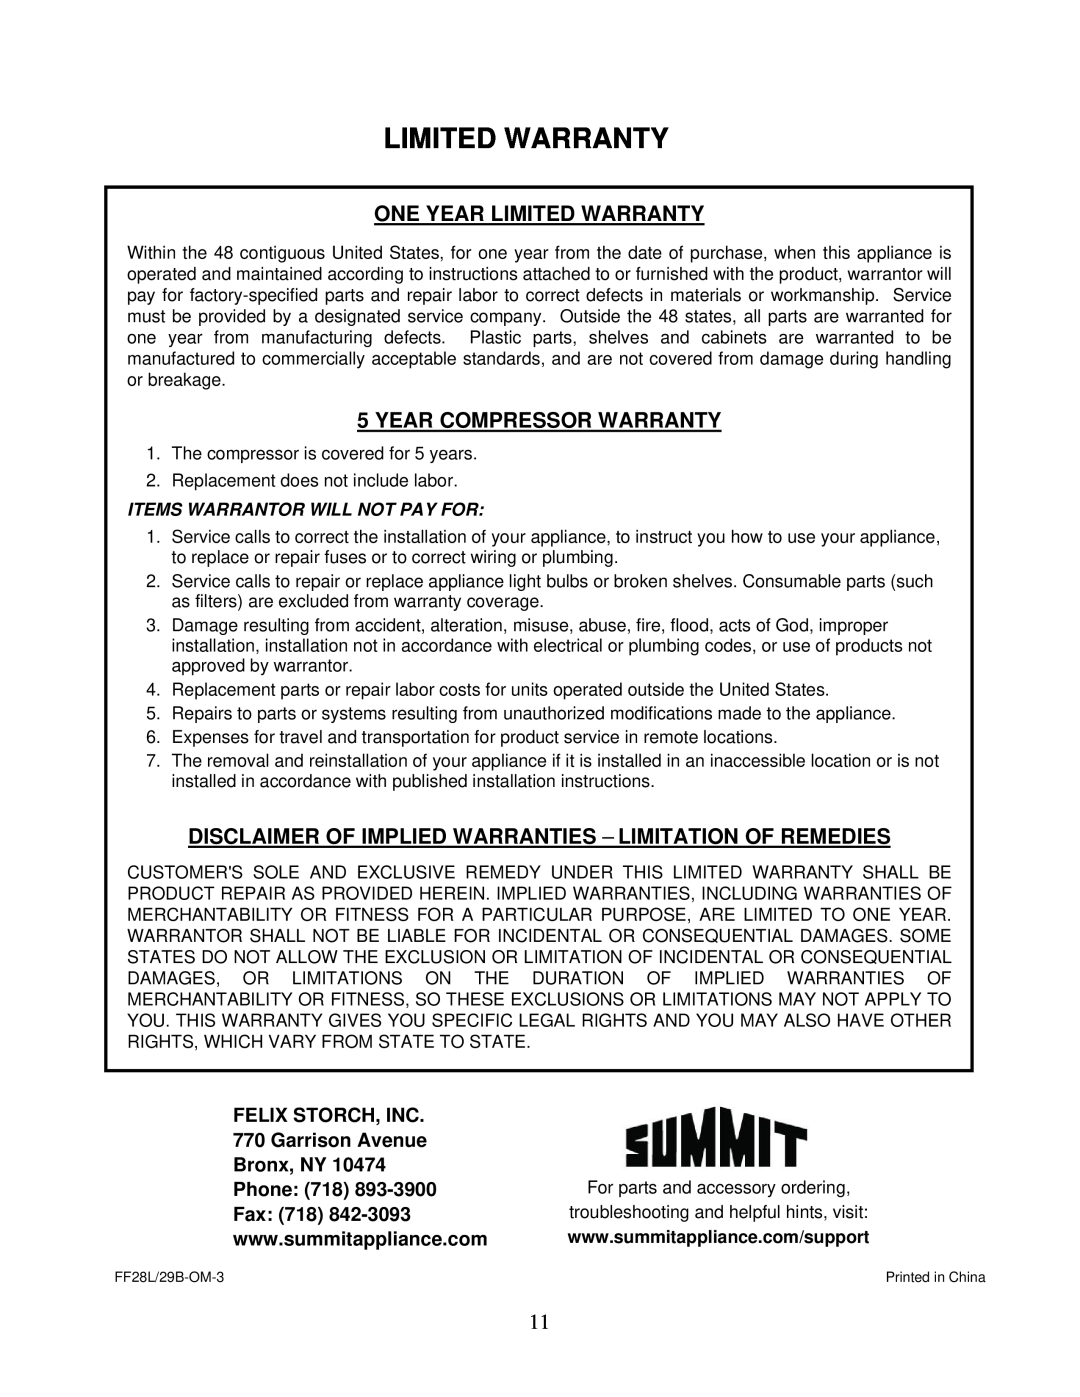 Summit FF28L One Year Limited Warranty, Year Compressor Warranty, FELIX STORCH, INC 770 Garrison Avenue Bronx, NY, Fax 